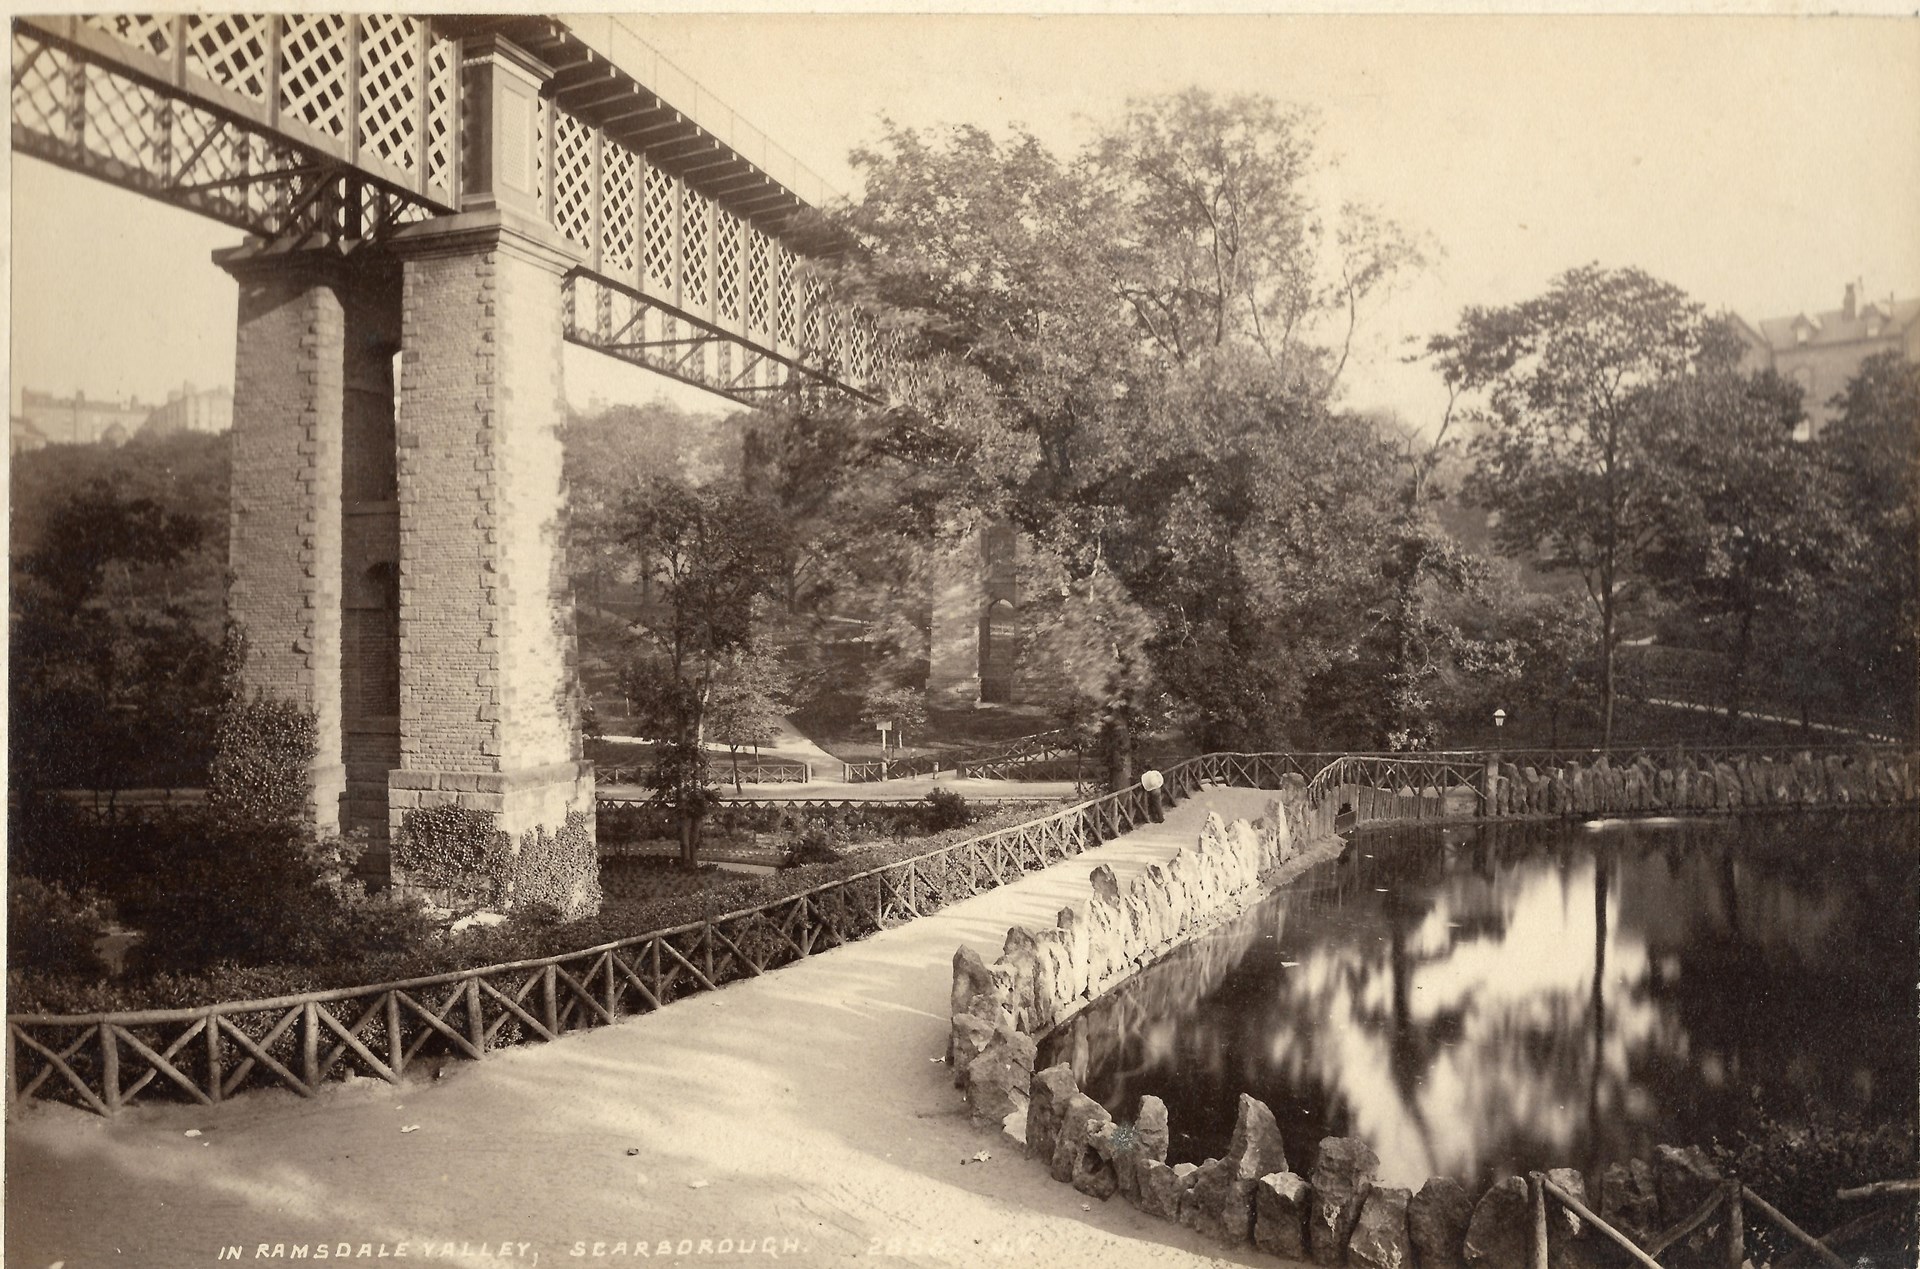 The bridge in 1890